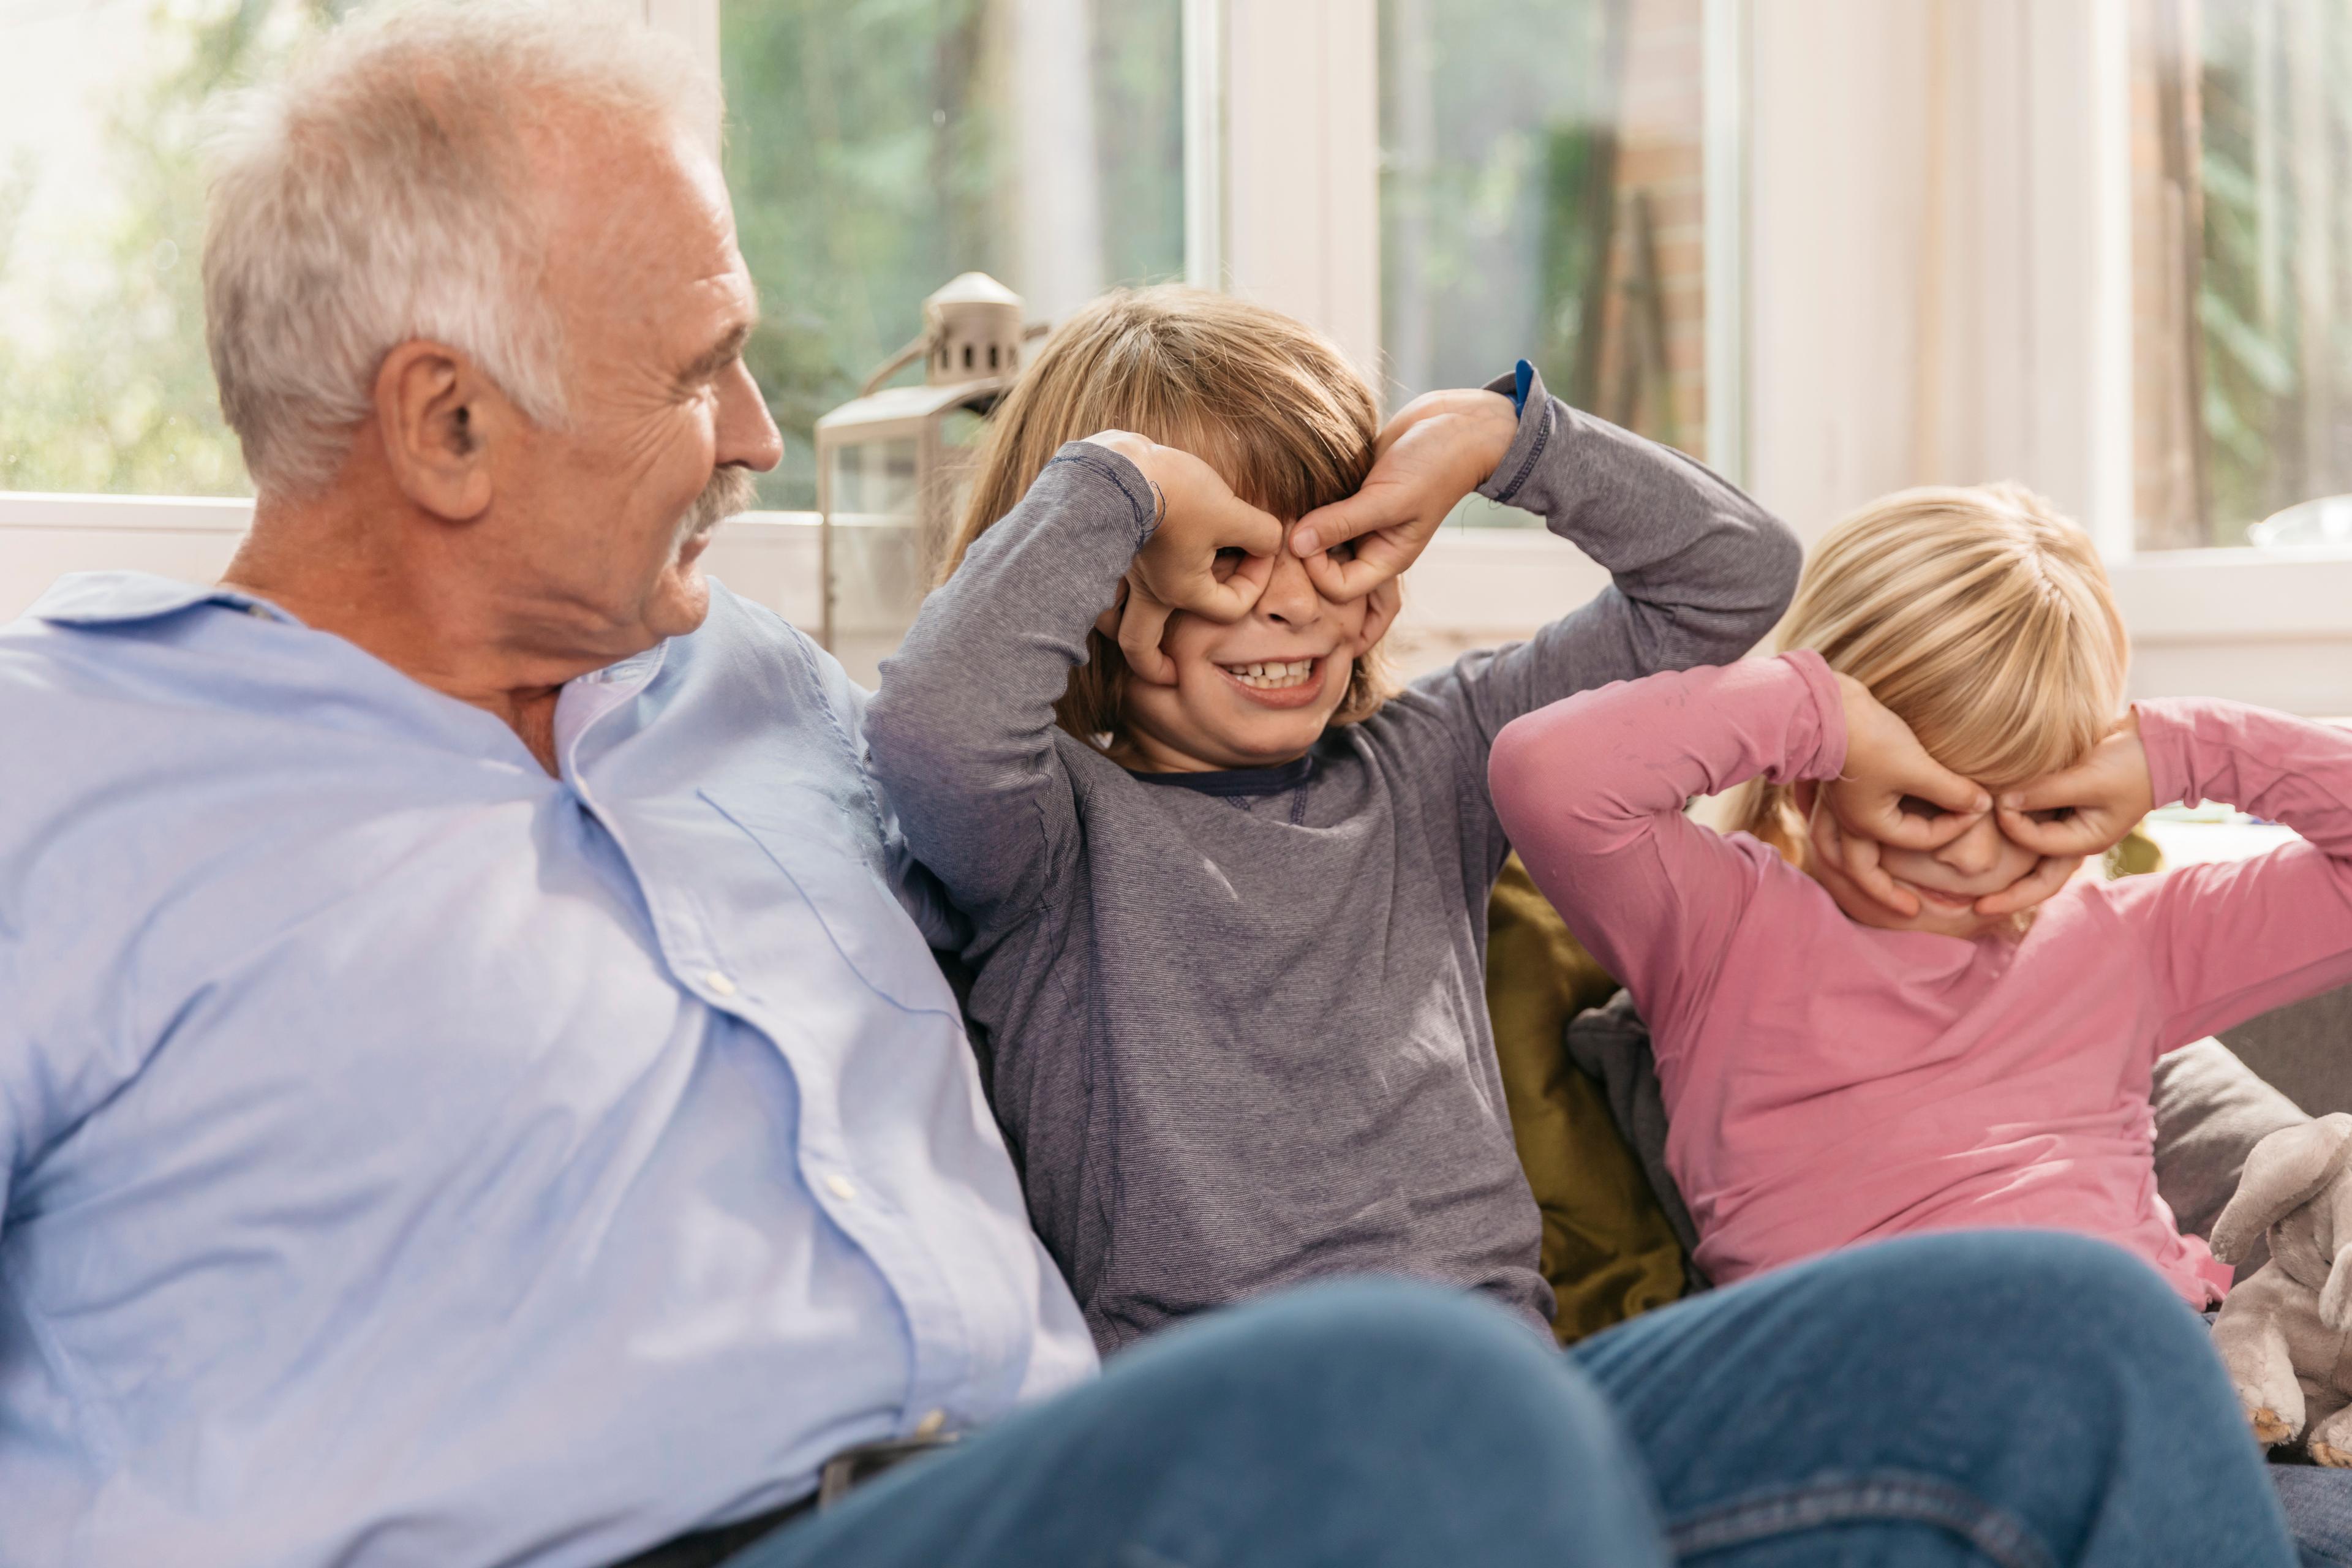 Due bambini stanno giocando a mimare gli occhiali con le mani davanti agli occhi. I bambini sono seduti su un divano con il nonno. Stanno tutti ridendo.